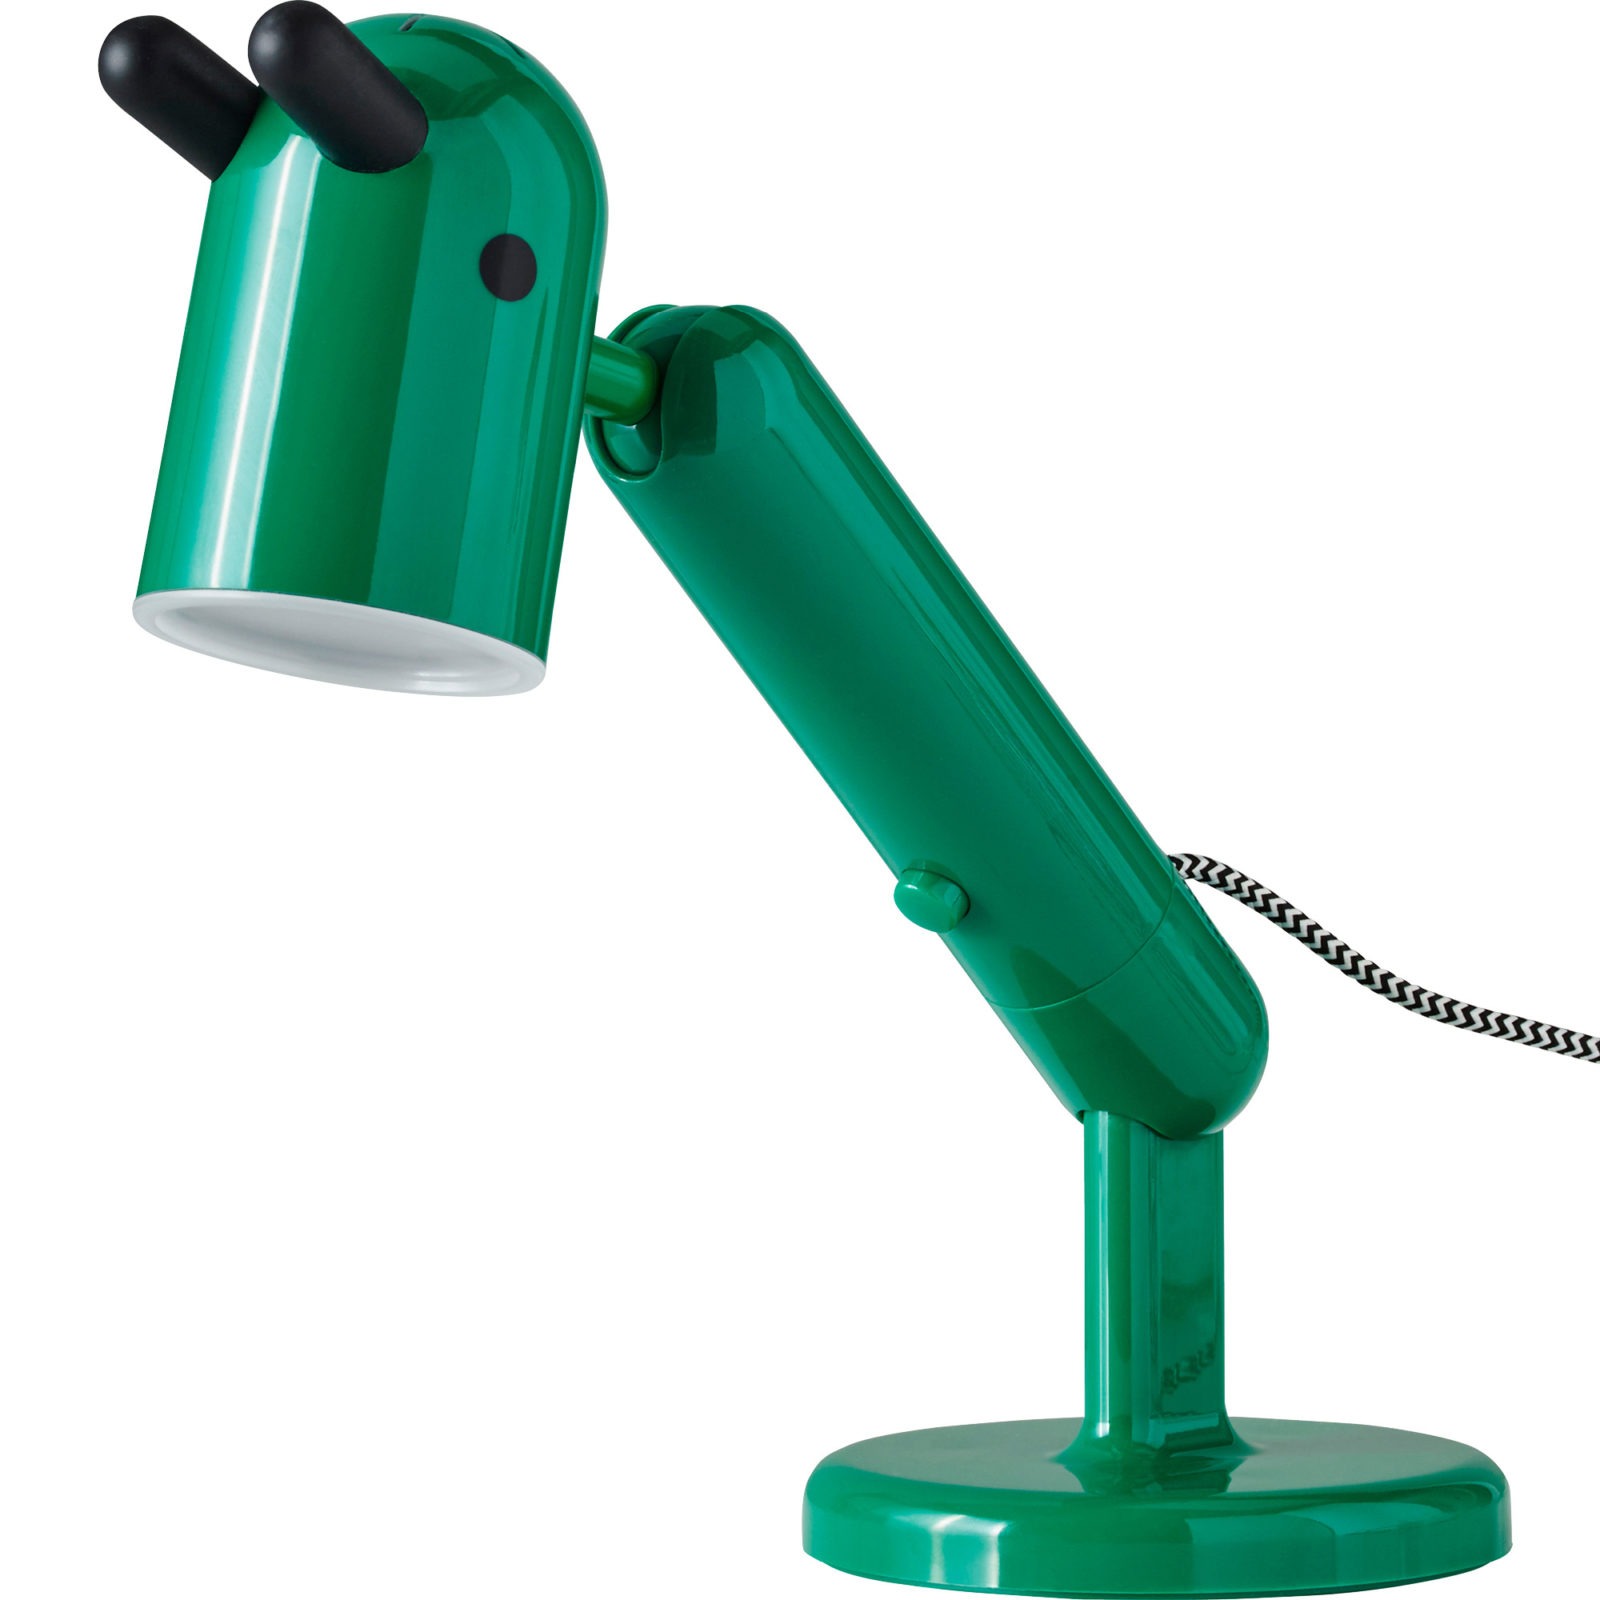 Grön barnbordslampa som ser ut som en nyfiken figur med spetsade öron.